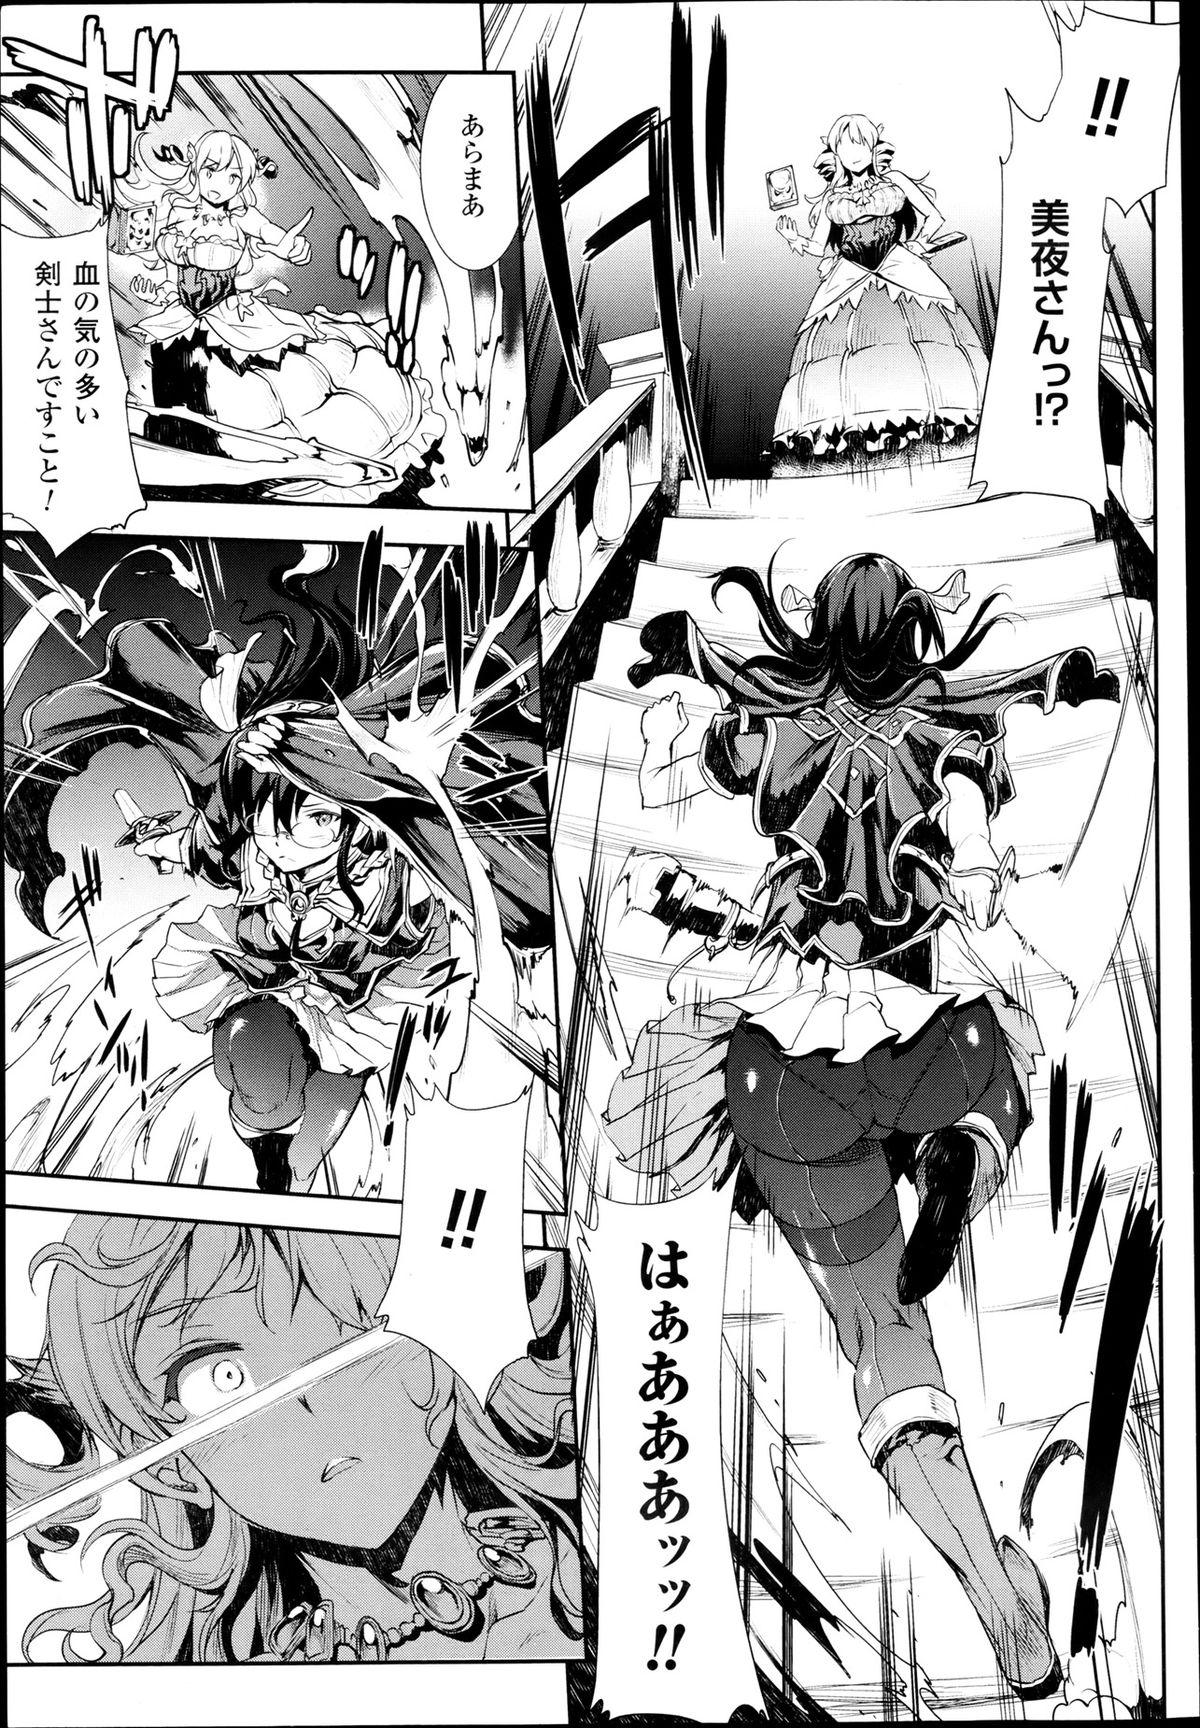 [Erect Sawaru] Shinkyoku no Grimoire -PANDRA saga 2nd story- Ch. 7-12 6